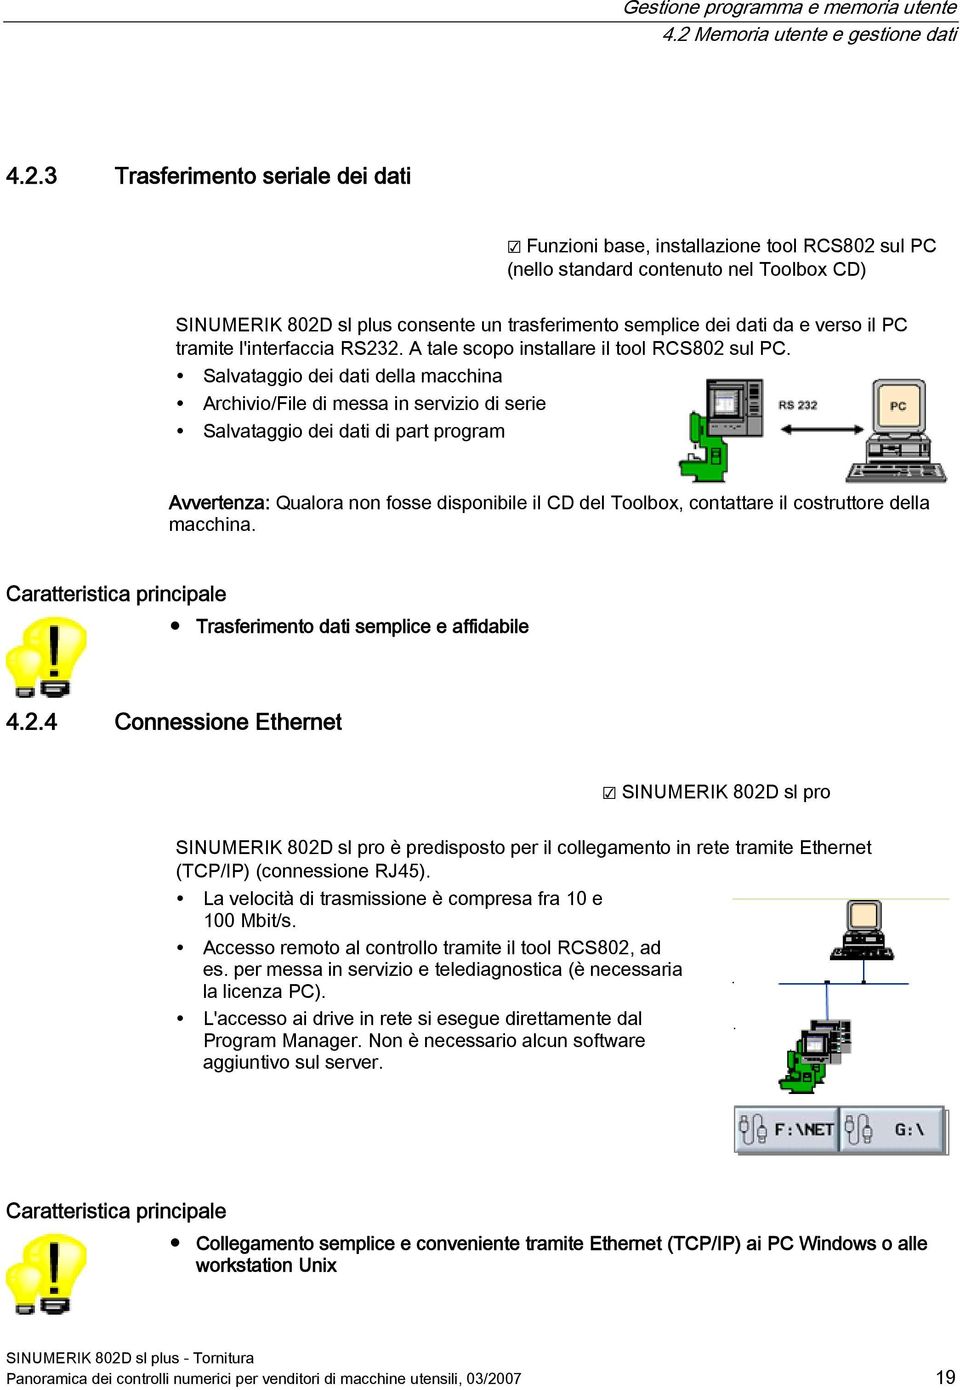 3 Trasferimento seriale dei dati Funzioni base, installazione tool RCS802 sul PC (nello standard contenuto nel Toolbox CD) SINUMERIK 802D sl plus consente un trasferimento semplice dei dati da e